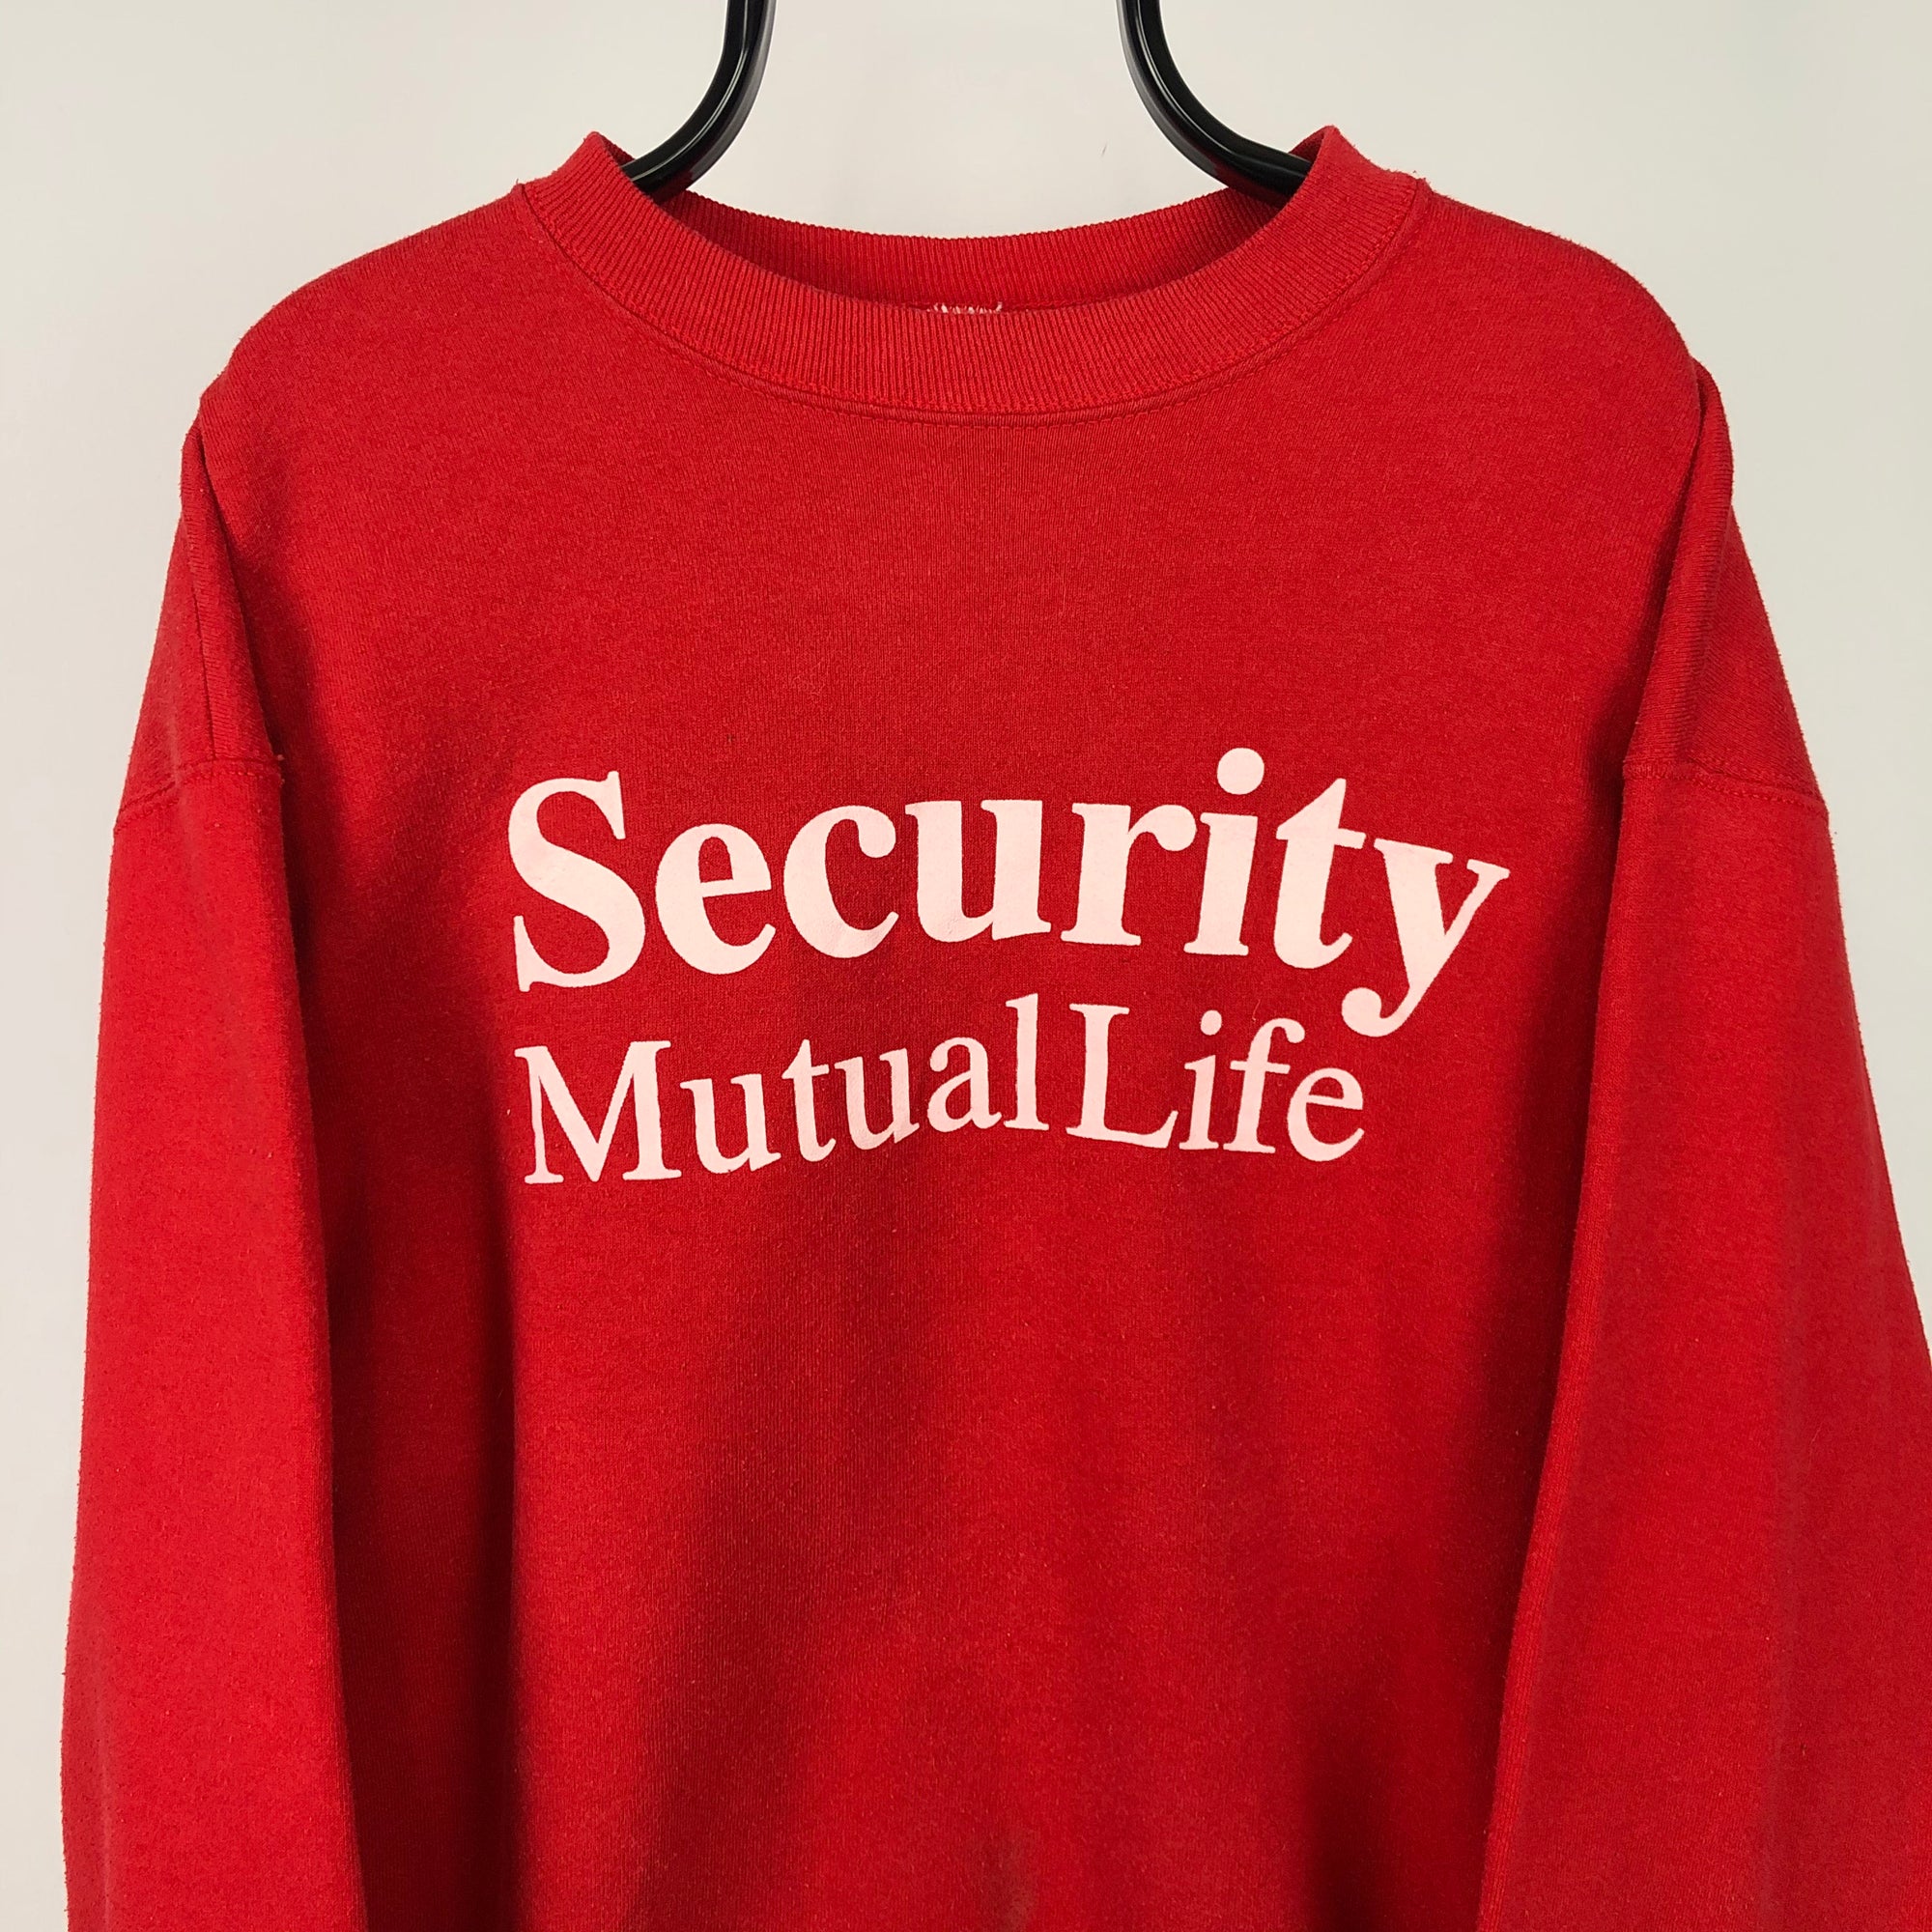 Vintage 90s 'Security' Sweatshirt in Red - Men's Large/Women's XL